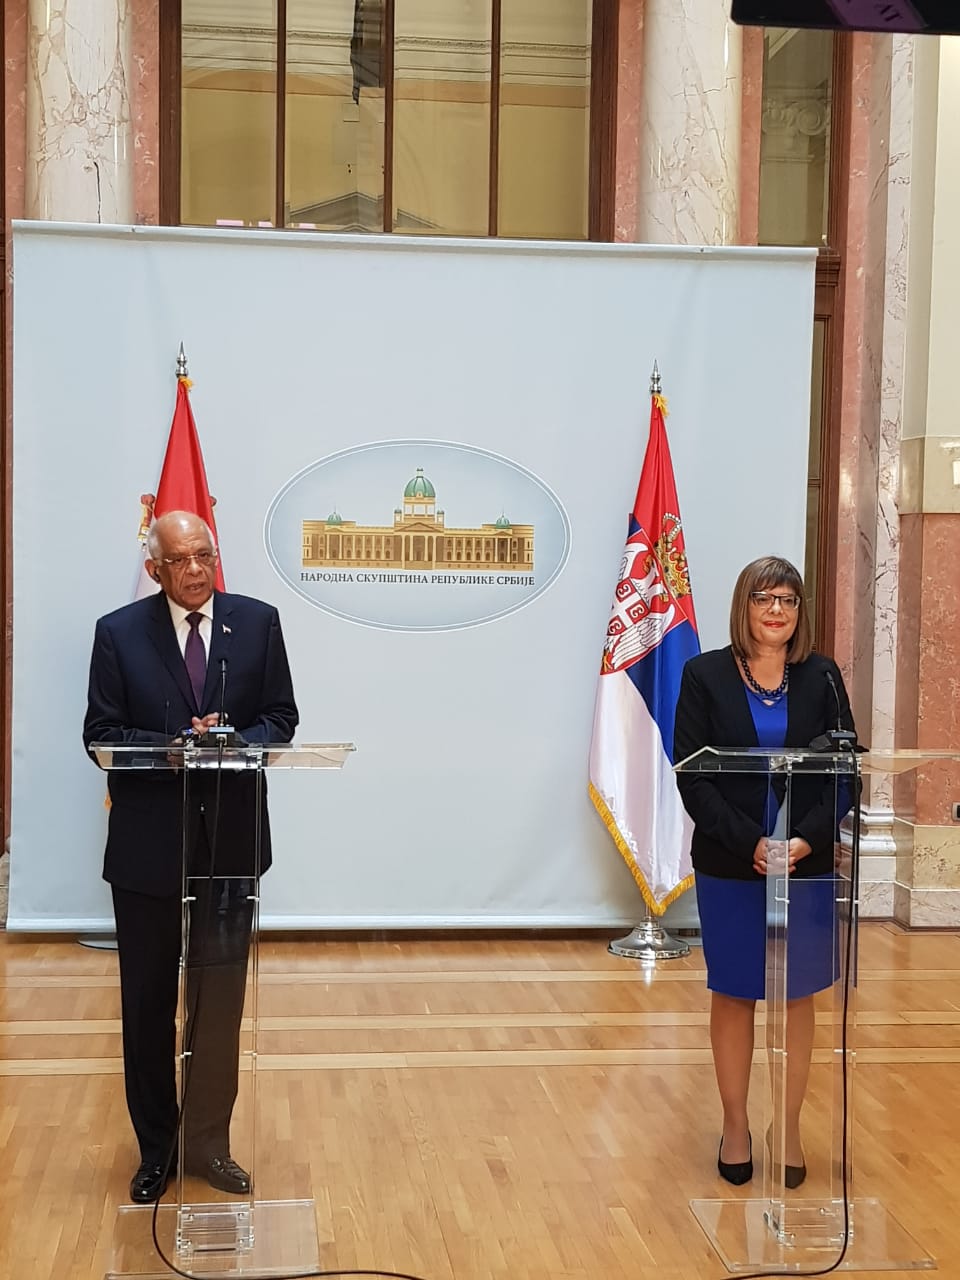  الدكتور على عبد العال رئيس مجلس النواب يزور البرلمان الصربى (6)